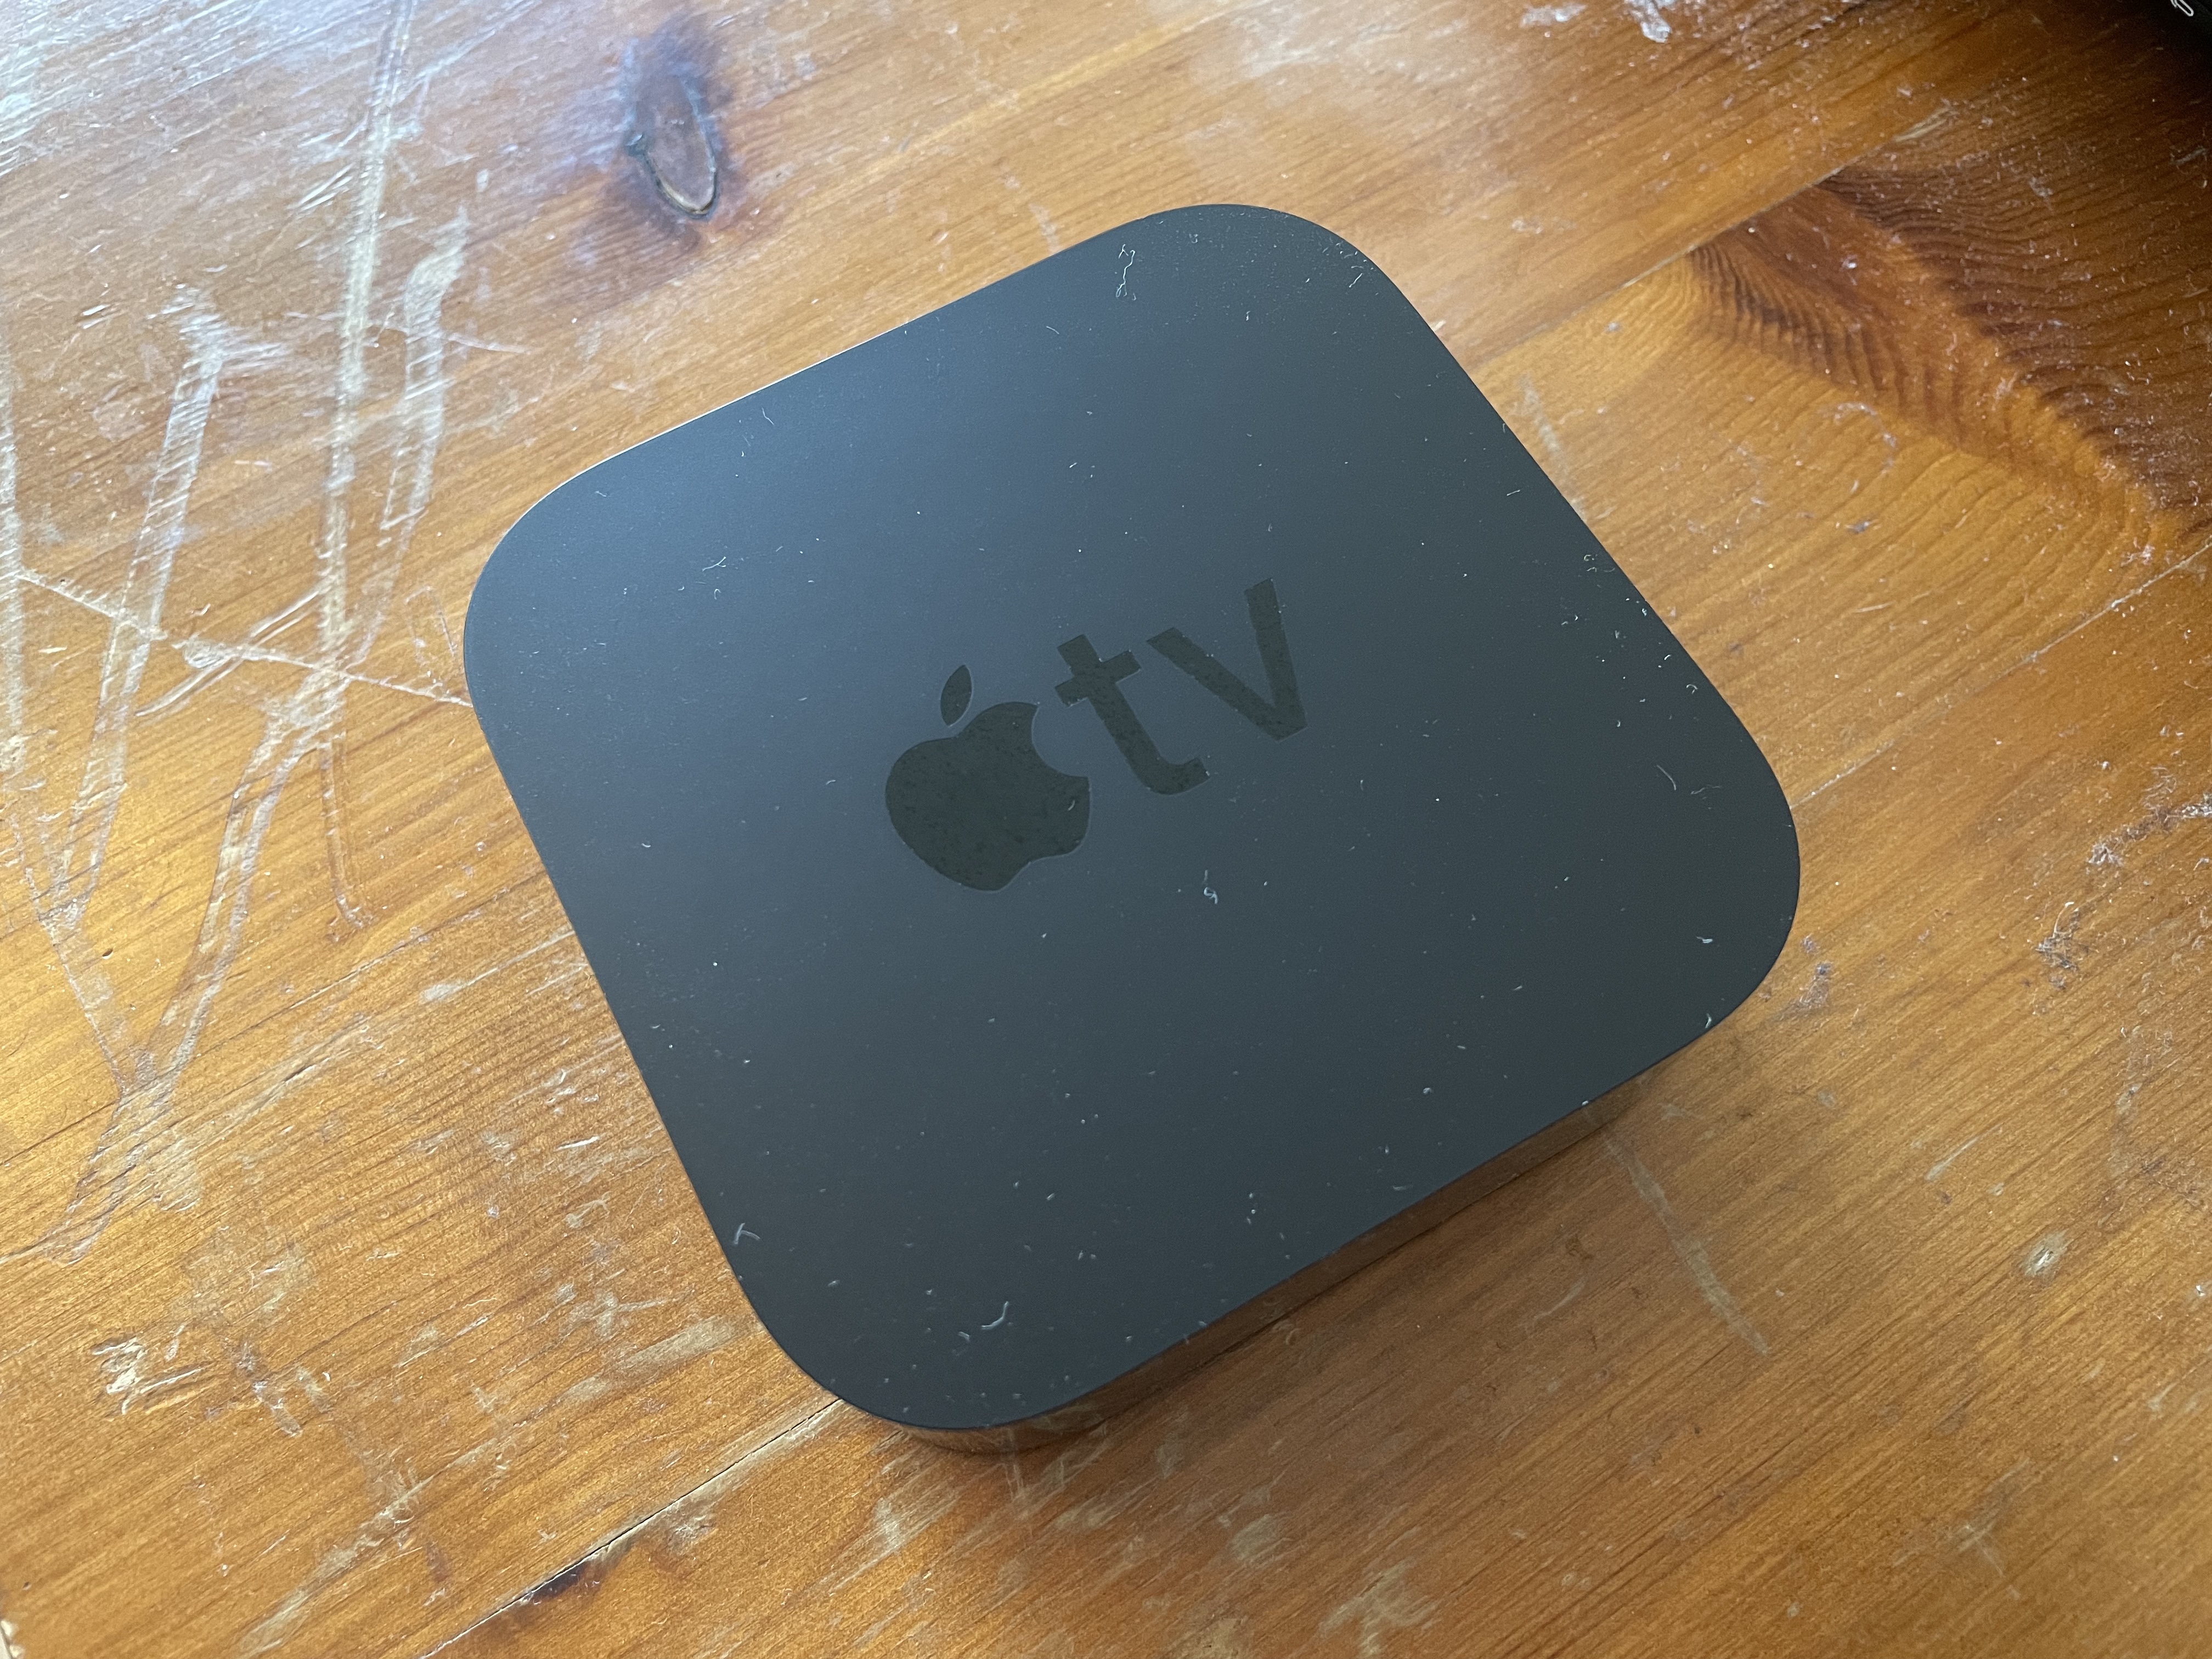 Apple TV 4K (2021) verdict